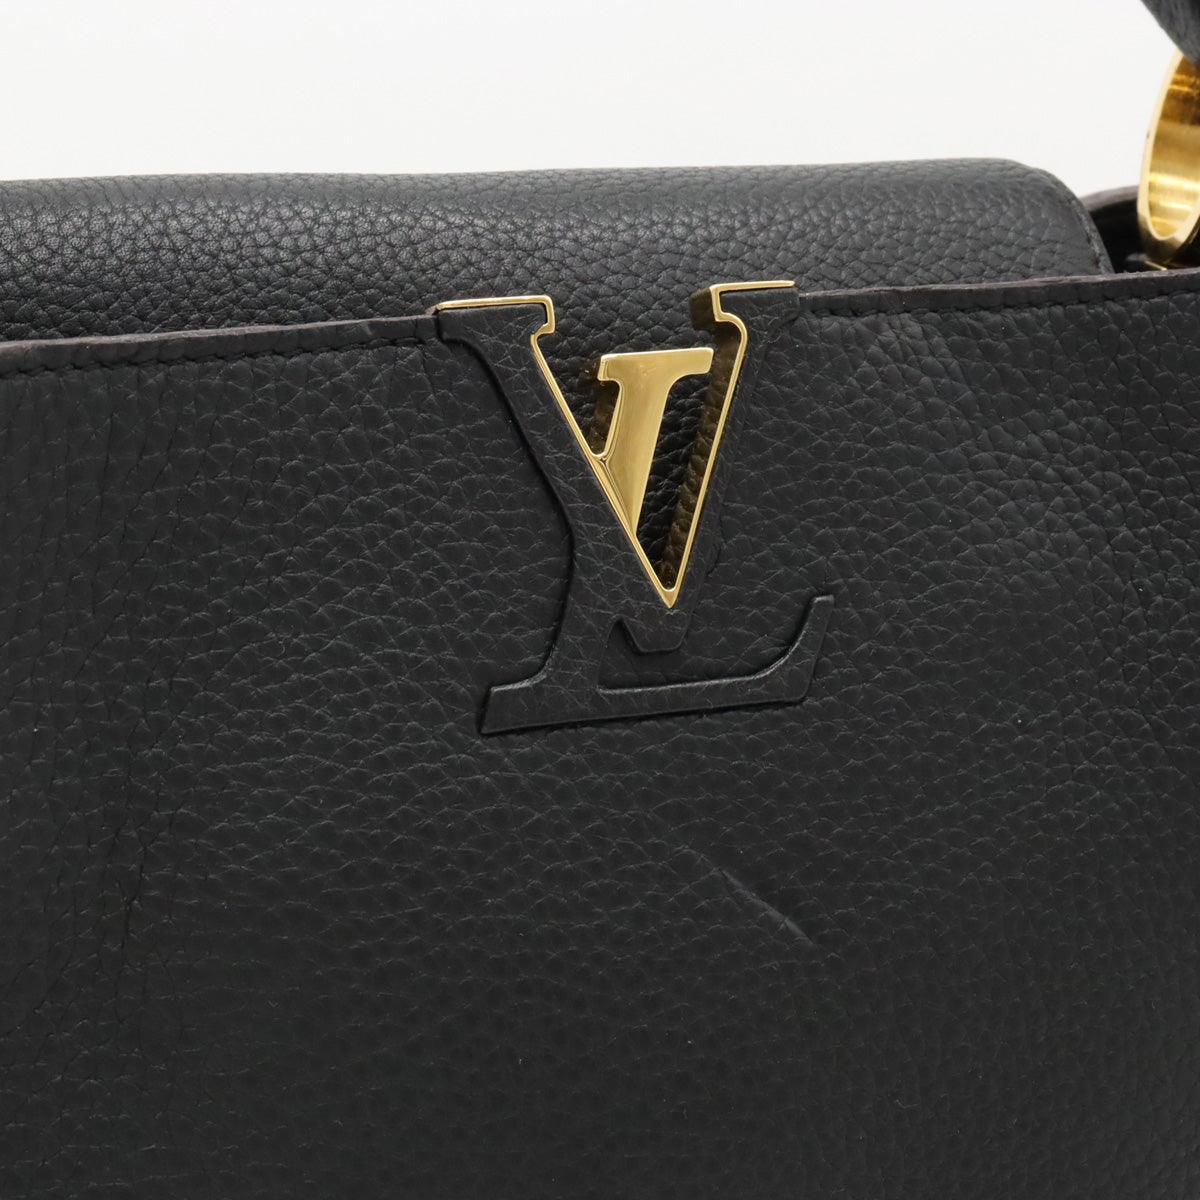 LOUIS VUITTON Louis Vuitton Capsine MM Handbag  Leather Black Black Gold  M48864